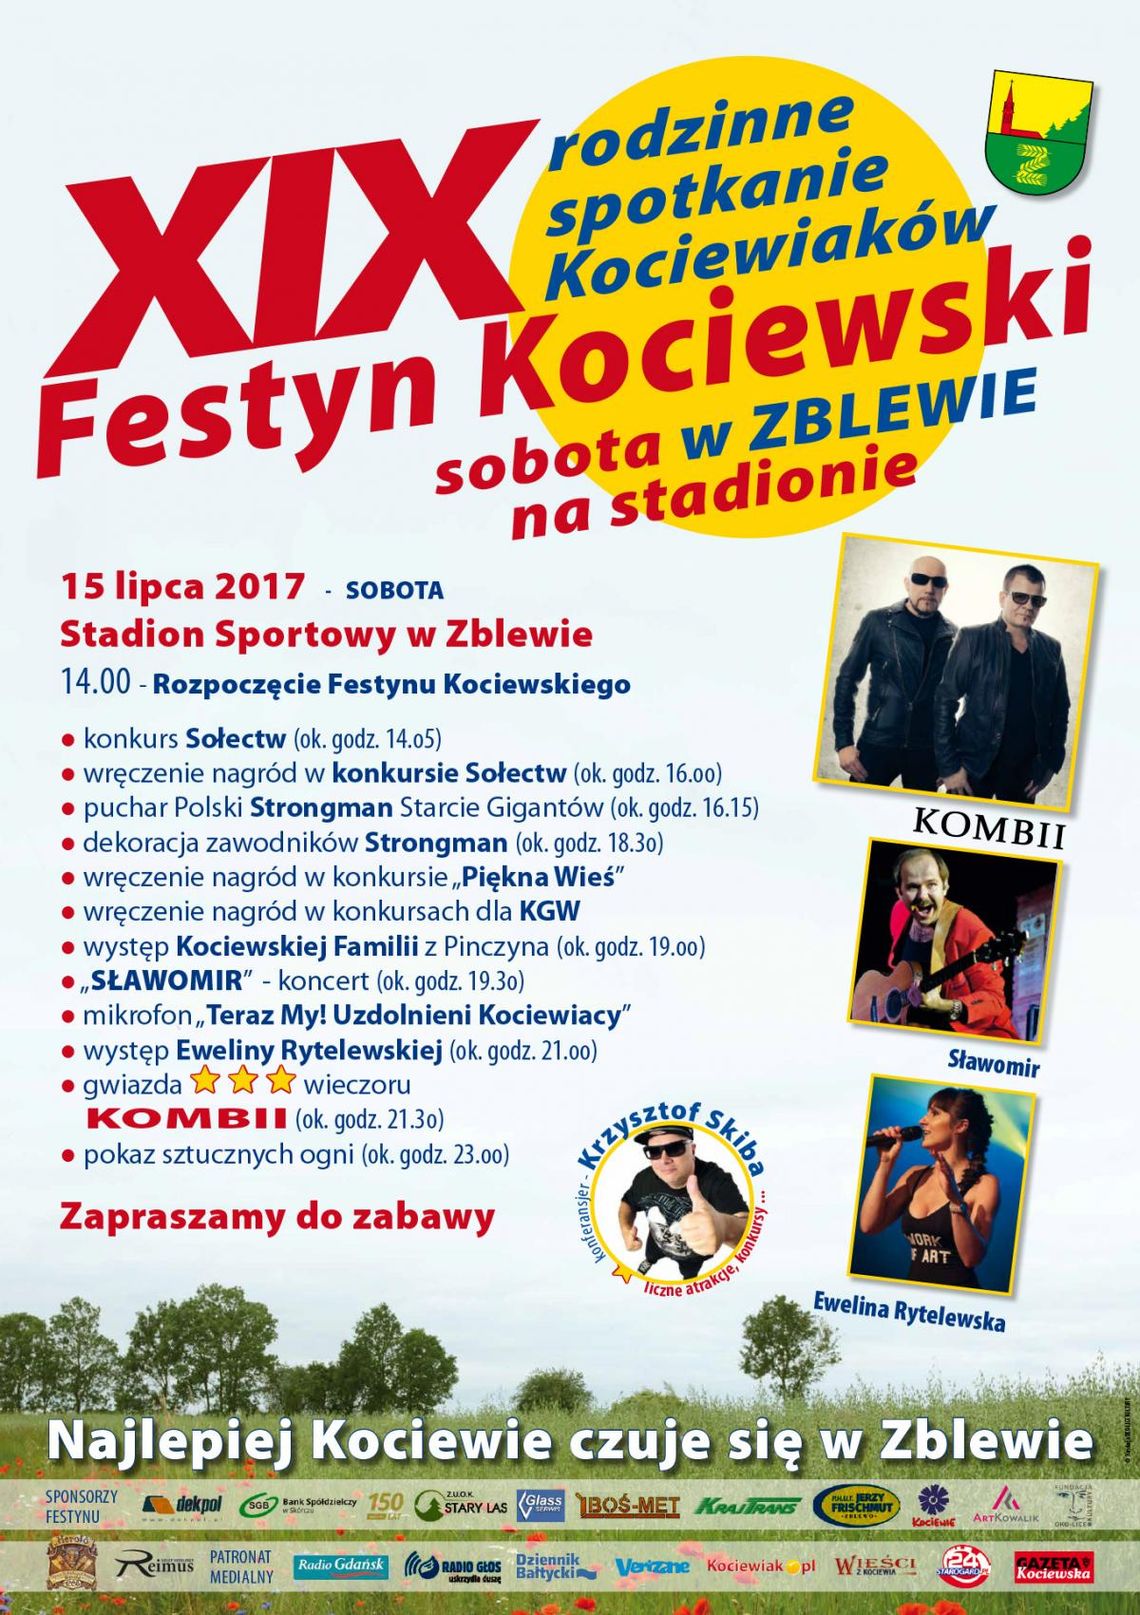 XIX Festyn Kociewski w Zblewie. Na scenie wystąpi m.in. zespół Kombi! 